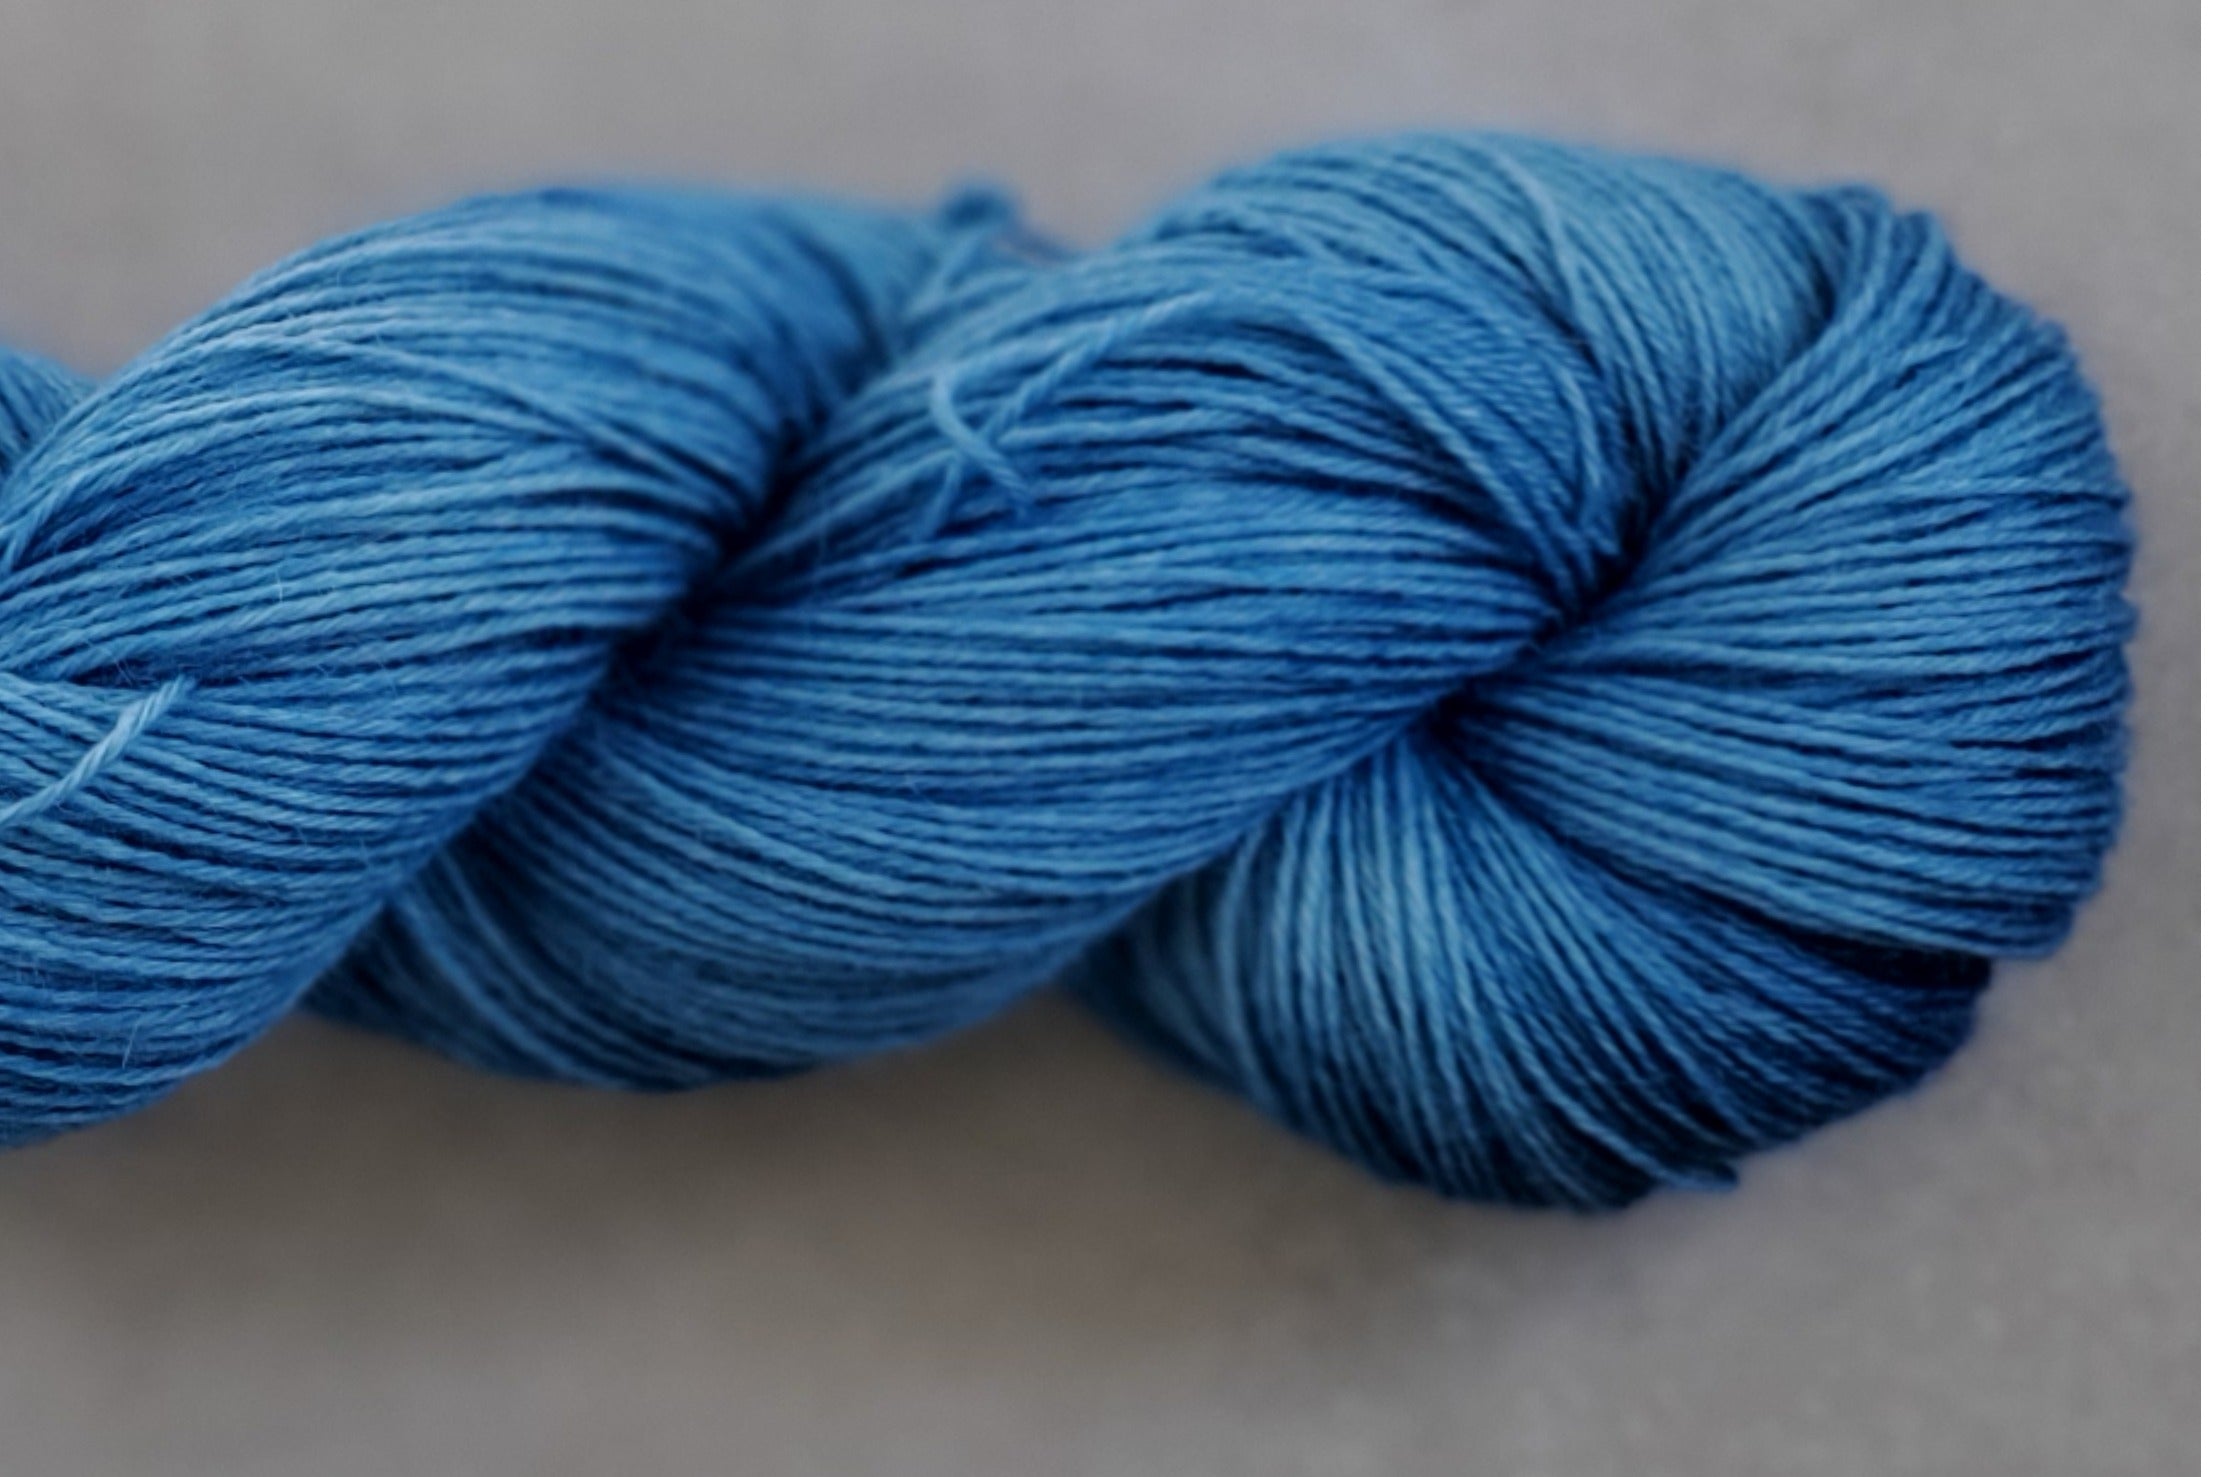 Sip N Stitch Yarn Box - Cratejoy